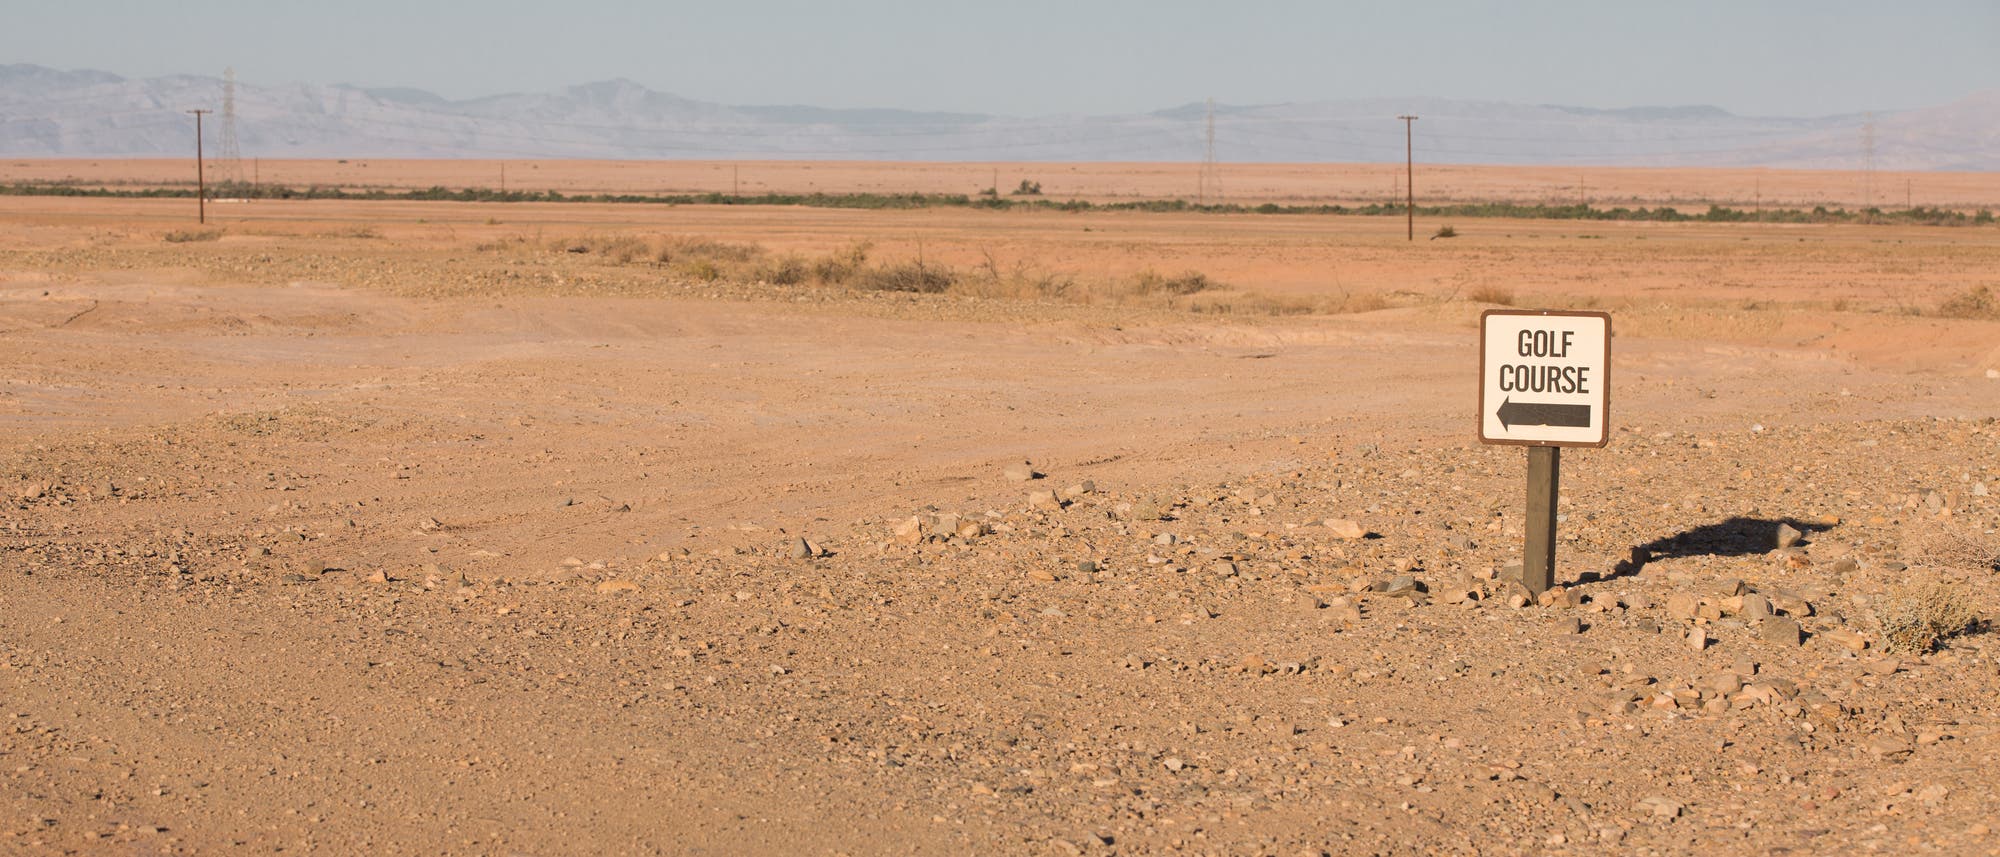 Schild weist auf einen Golfplatz in der Wüste hin